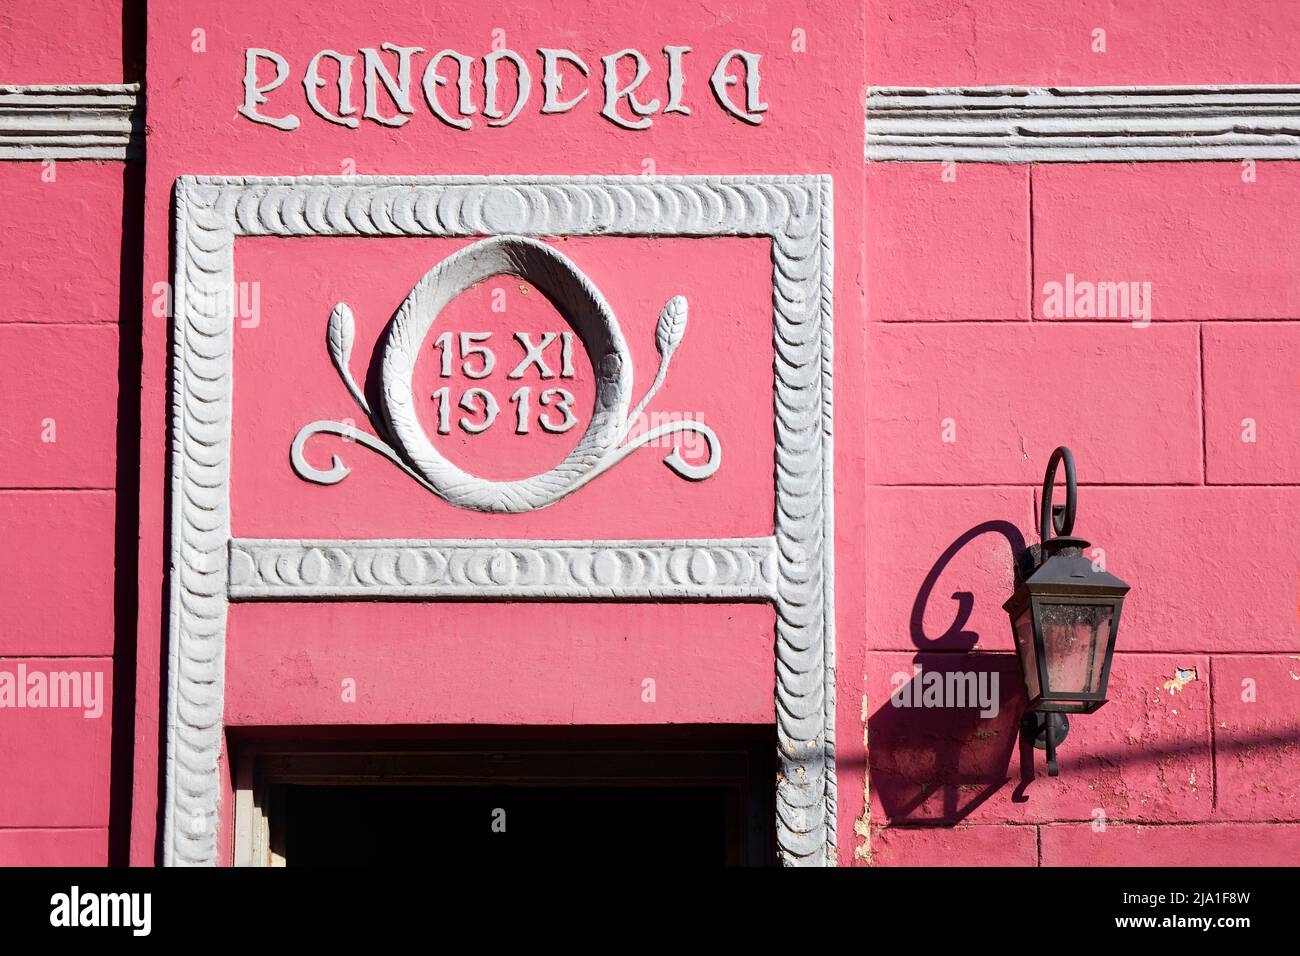 Detalle de la fachada de la panadería más antigua de la Isla Martín García en arquitectura colonial, Río de la Plata, Argentina. Foto de stock